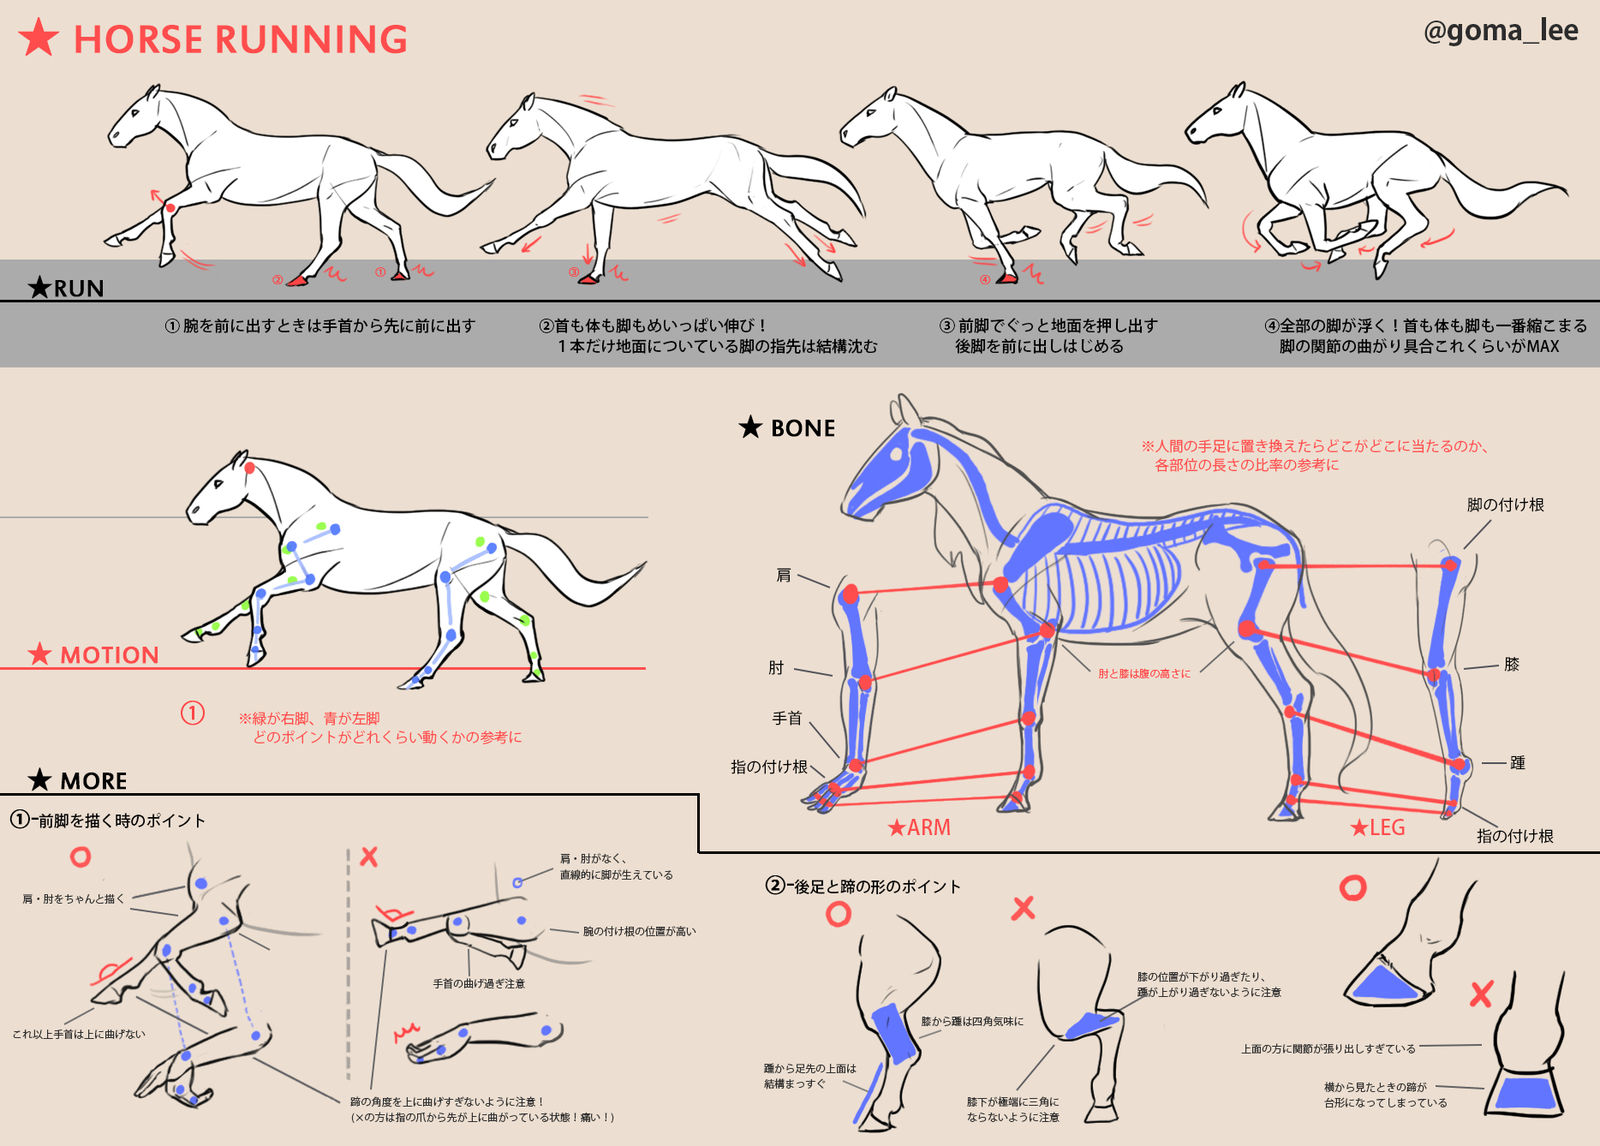 马的跑法和脚的描绘方法备忘录